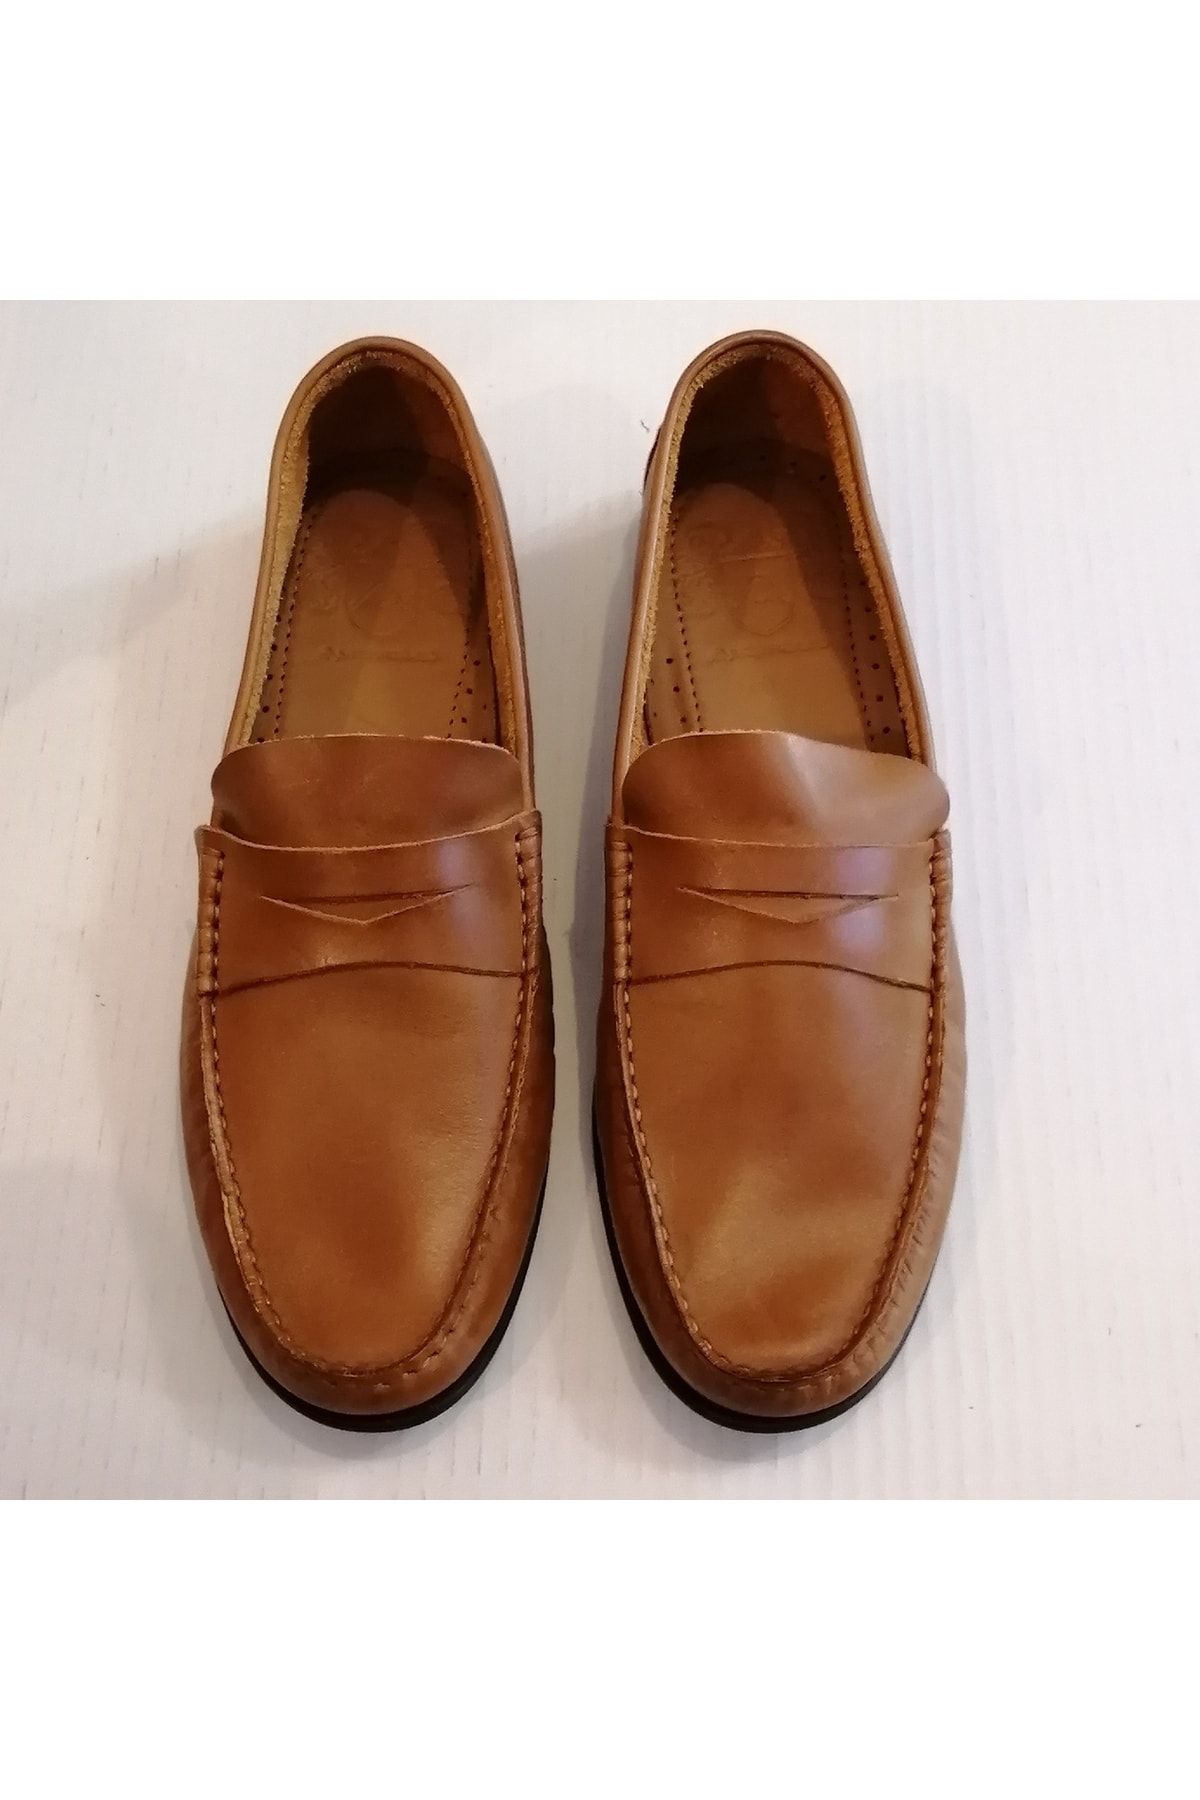 Ambitious Unisex Hakiki Deri Yakma Taba Antik El Dikişli İnce Tabanlı Yumuşak Loafer Ayakkabı